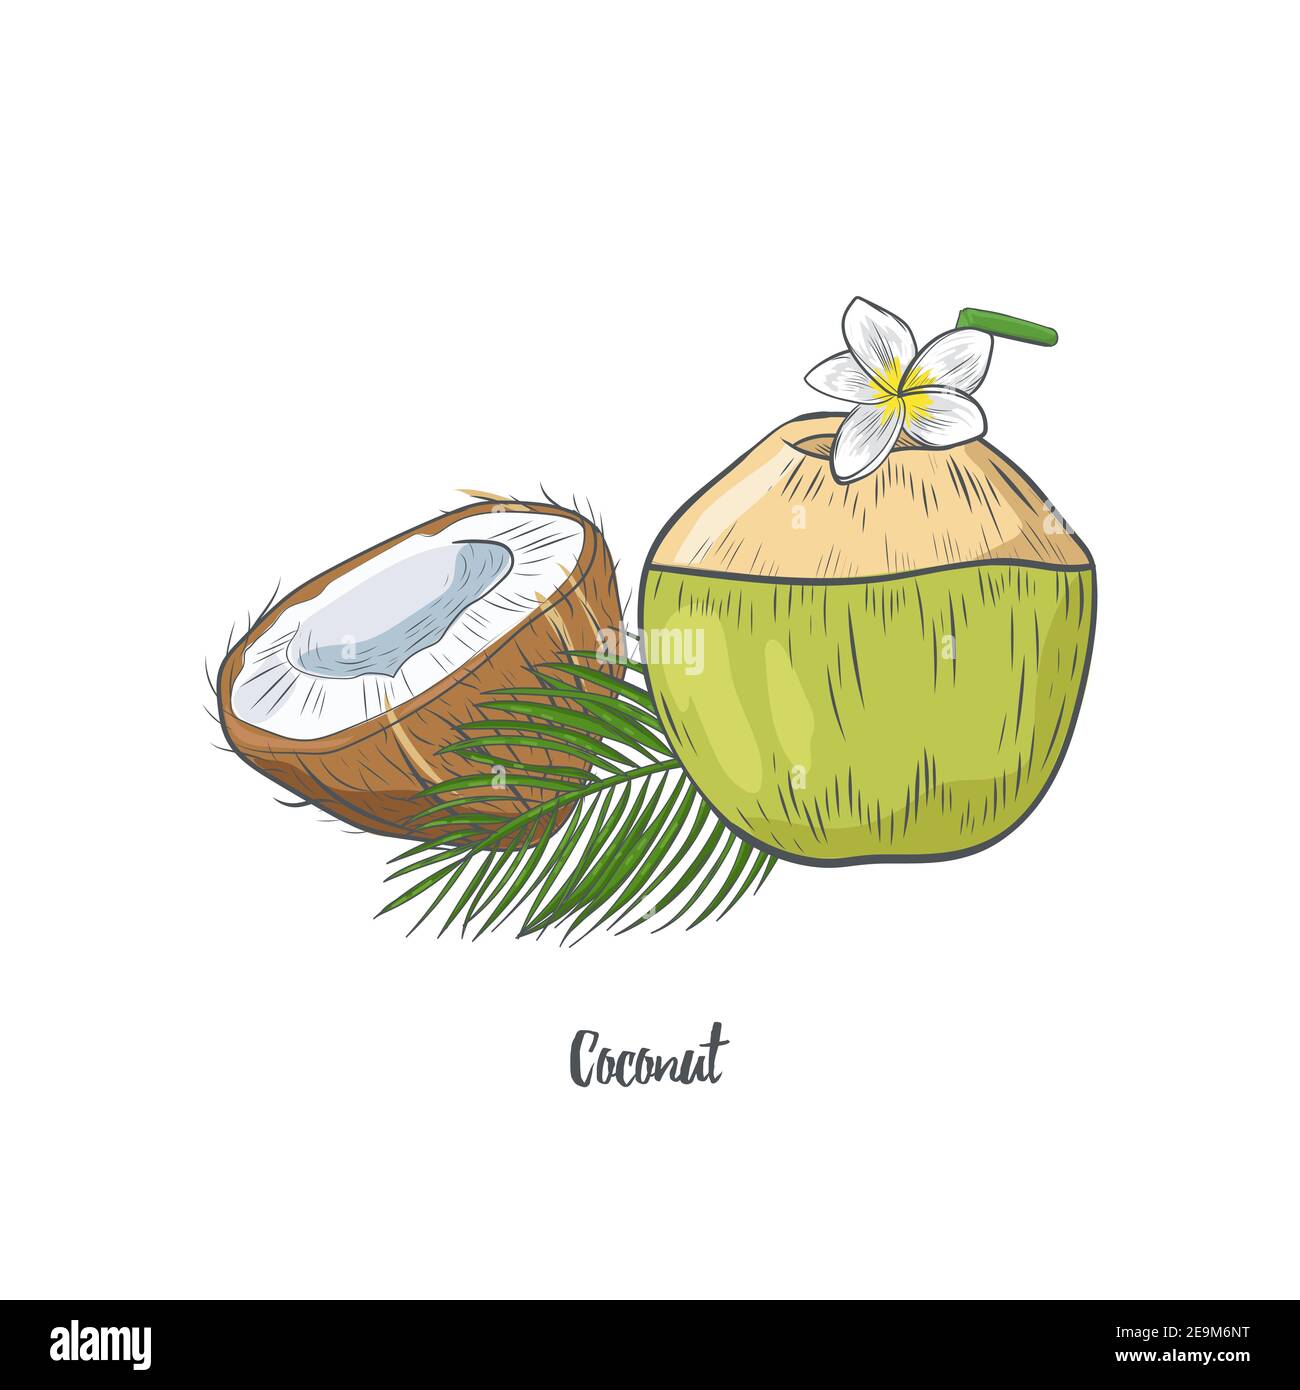 Drawing coconut Royalty Free Vector Image - VectorStock